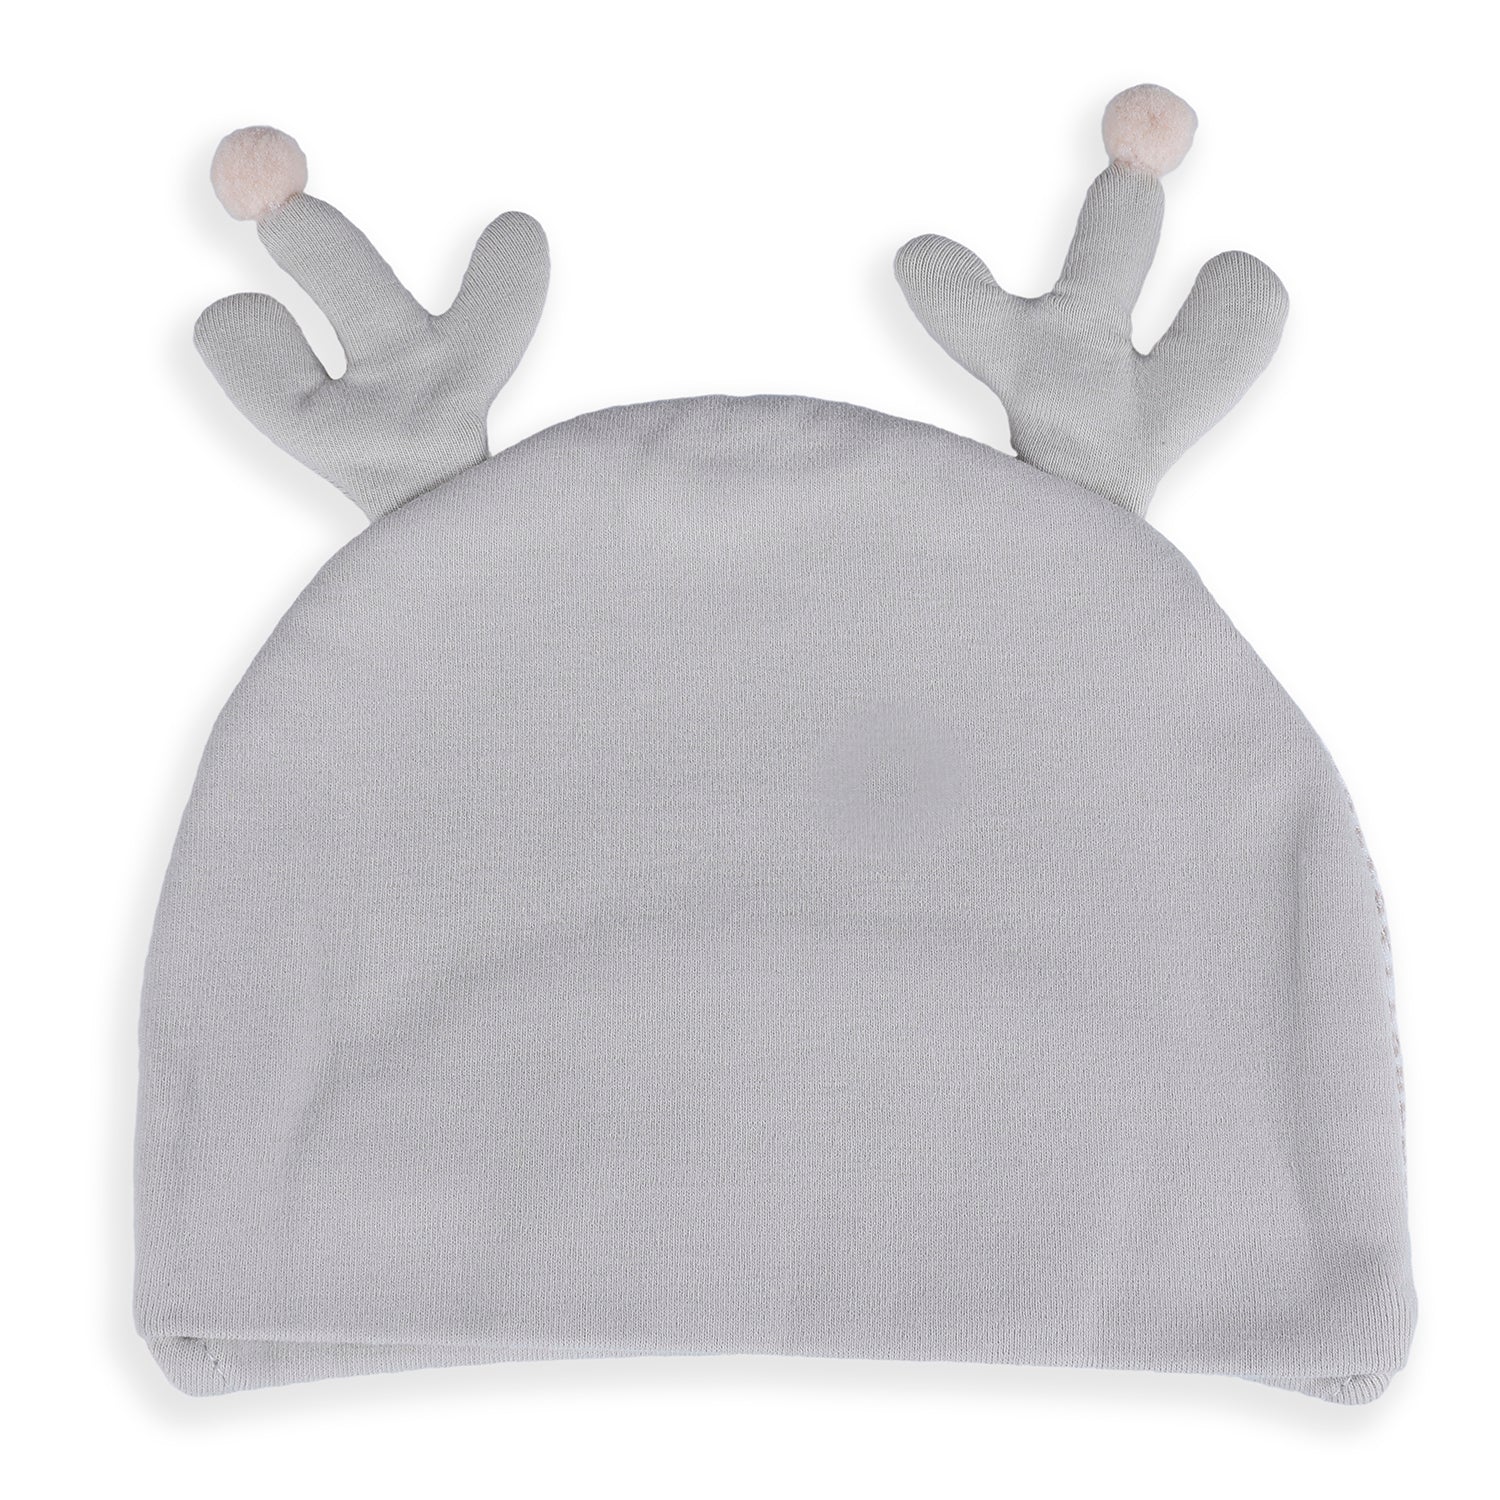 Baby Moo Deer Antler Soft Cotton Cap - Grey - Baby Moo